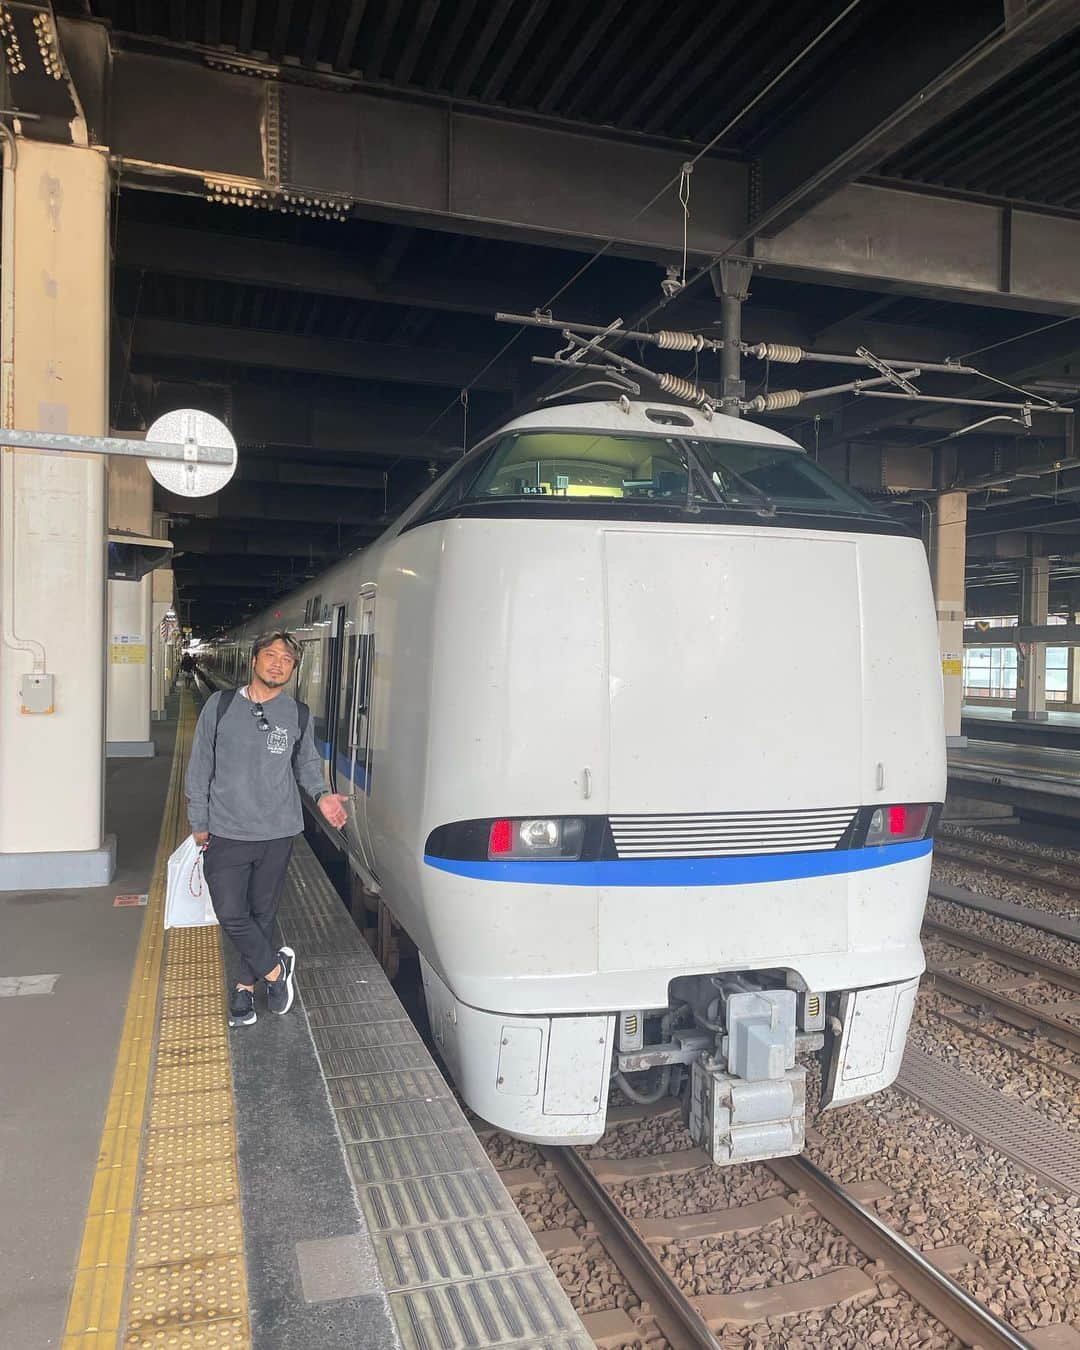 光永亮太さんのインスタグラム写真 - (光永亮太Instagram)「FM COCOLO「MOVE ON SATURDAY」内の「赤い風船 TRAVEL UPDATE」にて今日は金沢のオススメスポットその1をご紹介しました！  取材で訪れた秋の金沢、最高だったのです！  大阪からはサンダーバードでおよそ2時間30分。金沢駅へ。 金沢駅の兼六園口にある、おもてなしドーム。金沢は雨や雪が多いので『駅を降りた人に傘を差し出すおもてなしの心』をコンセプトに誕生したそうです。 荘厳で大迫力な鼓門。高さが13.7mある柱に支えられた門構えは圧巻。駅に降り立っていきなり見所があるって嬉しい。  金沢駅の鼓門から金沢駅通りをまっすぐ進んで徒歩10〜15分。「近江町市場」に到着！ 金沢の食文化を支える『市民の台所』として親しまれている市場。狭い小路には約170の店が並んでいます。海鮮など全てがとにかく安くてびっくり！！秋刀魚、ヤリイカやハタハタ、これから旬を迎えるズワイガニも並んでいて目移り。売り物の生牡蠣をその場で味わえるお店などもあって、平日にも関わらず大賑わい！地物の野菜「加賀野菜」や果物も並んでいました。思わず財布の紐が緩むと思います（笑）  そして金沢市の中心部に位置する兼六園。石川県を代表する観光名所でありながら、風光明媚な庭園で、日本三名園のひとつ。国の特別名勝にも指定されています。この日も団体客や外国人観光客で大賑わい！広大な園内には築山（ちくやま）、池、茶屋などが点在していて、兼六園の園内、ゆったりと散策を楽しみました。。訪れた日は天気も良くて通り抜ける秋風がとにかく気持ちよかった！これからは紅葉シーズン。季節によって表情を変えるので、一年を通して楽しめる場所。  兼六園に隣接する金澤神社にもお参り。学問向上、商売繁盛、災難避け、交通安全にご利益があるとされています。本殿の隣には小さな赤鳥居が連なっていて美しい。  そしてそのまま歩いて金沢21世紀美術館へ！ 金沢21世紀美術館と言えば「レアンドロ・エルリッヒ」の「スイミング・プール」が有名。見ている人が実際に作品の内部へと入り込むことができ、面白い写真も撮れる「インスタ映え」することでも人気の展示。残念ながらこの日はすでに予約枠でいっぱいで下に入ることはできなかったのですが、上から見ることはできました。  現在、金沢21世紀美術館では「DXP（デジタル・トランスフォーメーション・プラネット）1次のインターフェースへ」と「それは知っている：形が精神になるとき」が主催展覧会として開催中。僕個人的には12番の展示、Kono Tomohiroさんの「Digital Outfit/ 着る」という展示にグッときました。展示場には天井からウィッグのような、クラゲのようなものが無数にぶら下がっていて、鏡のようなディスプレイが壁にたくさんかかっています。そこに自分が映り込むと、バーチャルで仮面やウィッグを装着してくれるという仕掛けが。デジタルのものを着る、という面白い感覚に陥ります。この展示空間は彩りも鮮やかで、とってもポップ。  そして夜に行くならば全力でオススメしたいのが「チームラボ金沢城 光の祭」。戦国時代から江戸時代まで14代にわたり前田家が居城した金沢城。その金沢城をデジタルテクノロジーによってそのままアート空間にしているというプロジェクト。18時から21:30まで。11月26日まで開催しています。ここがとにかく美しくてめちゃくちゃ感動しました！  古きお城に最新のテクノロジー。融合している上に、本来の金沢城の美しさを更にアップグレードしていたから驚き。お城の石垣にさまざまな映像を浮かび上がらせ、新しい世界観を紡いでいくその様は息を呑む美しさ。どれも色鮮やかで、まるで蜷川実花さんの映像作品の中に入り込んだかのよう。そしてチームラボと言えばカラフルな卵の形をした球体の数々。そもそもこの球体の数々は自立しているのですが、これが風で吹かれたりする中で倒れたり、ゆっくりと色も変化していく様も幻想的。そしてこの卵形の球体の数々が妙に木々と溶け合っていて、夢の中に潜り込んだような錯覚に陥るんです。アンビエントな音楽と光の数々、風の音と匂いが全て融和していく不思議な感覚。 終盤、七色にライトアップされた並木道を通り抜けて目に飛び込んでくる金沢城の石垣への映像投影なんてもう鳥肌です。  「お絵描き武将」というコーナーも！好きな武将の絵を一枚選んでクレヨンで塗り絵をします。実際に自分が塗り絵したものをスキャンして読み込んでもらうと、実際に自分が描いた絵がアバターとなって映像として映し出されて動き出すのです！他の武将と話し込んだり、笑い出したり、走り出したり。その仕草もとってもファニーで、ついつい微笑ましくみてしまう。その絵を缶バッジにしてくれるというサービスも。僕も実際に缶バッジを作ってもらいましたが、良い思い出となりました！きっと感動していただけること間違いなしです。 とにかくこの時期の金沢、吹き抜ける風も気持ちよくて、最高すぎました！  赤い風船で「秋の金沢」満喫して下さい！ 控え目に言っても最高でした！  #にこTA #赤い風船 #日本旅行 #チームラボ金沢城光の祭 #兼六園 #近江町市場 #金澤神社 #サンダーバード   @west_akafu」10月21日 11時49分 - mitsunagaryota